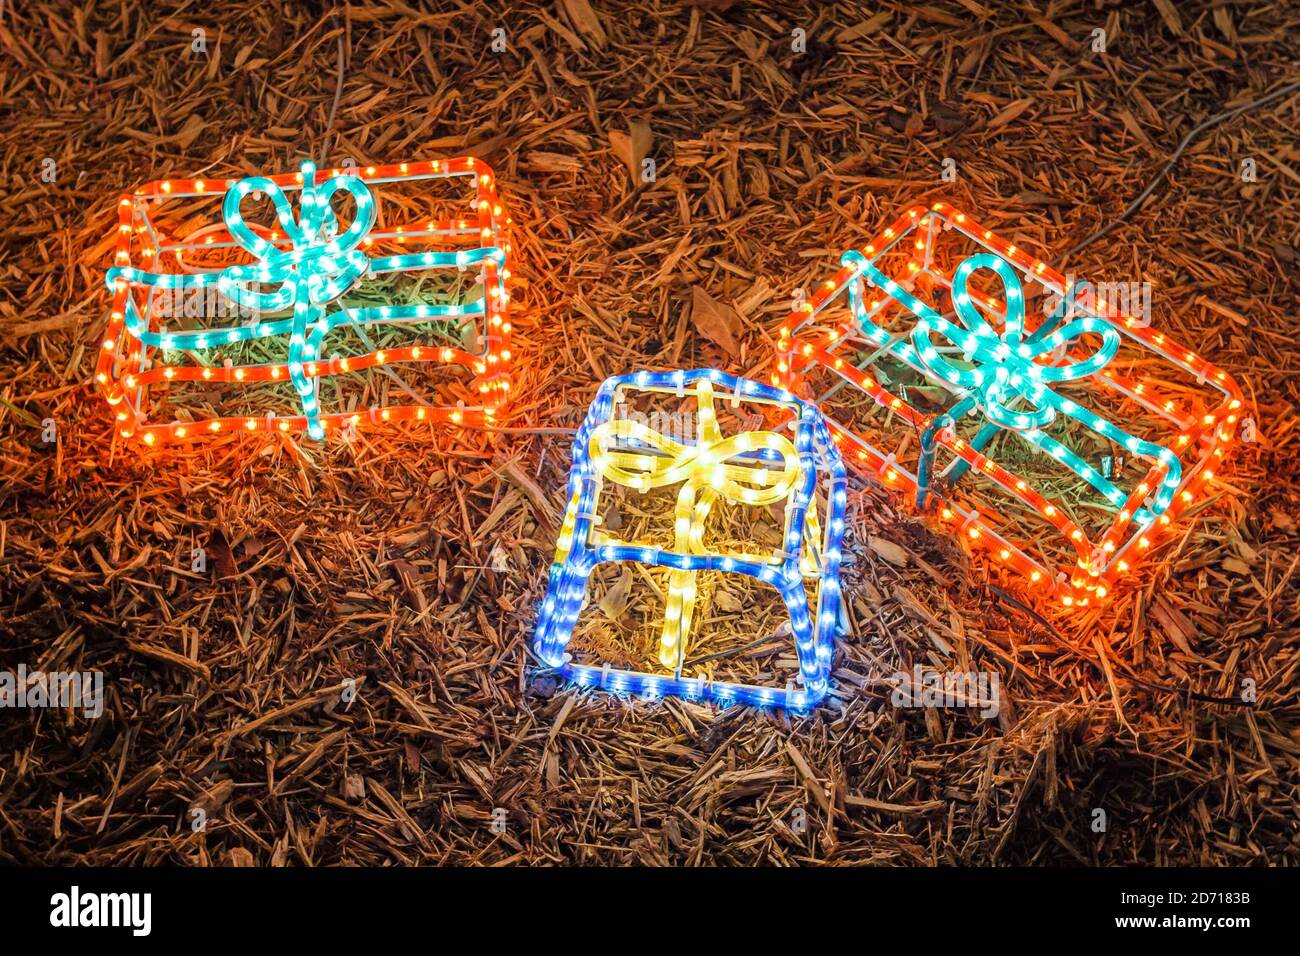 Miami Florida, decoración de Navidad decoraciones vacaciones de invierno, luces iluminación forma regalos, Foto de stock